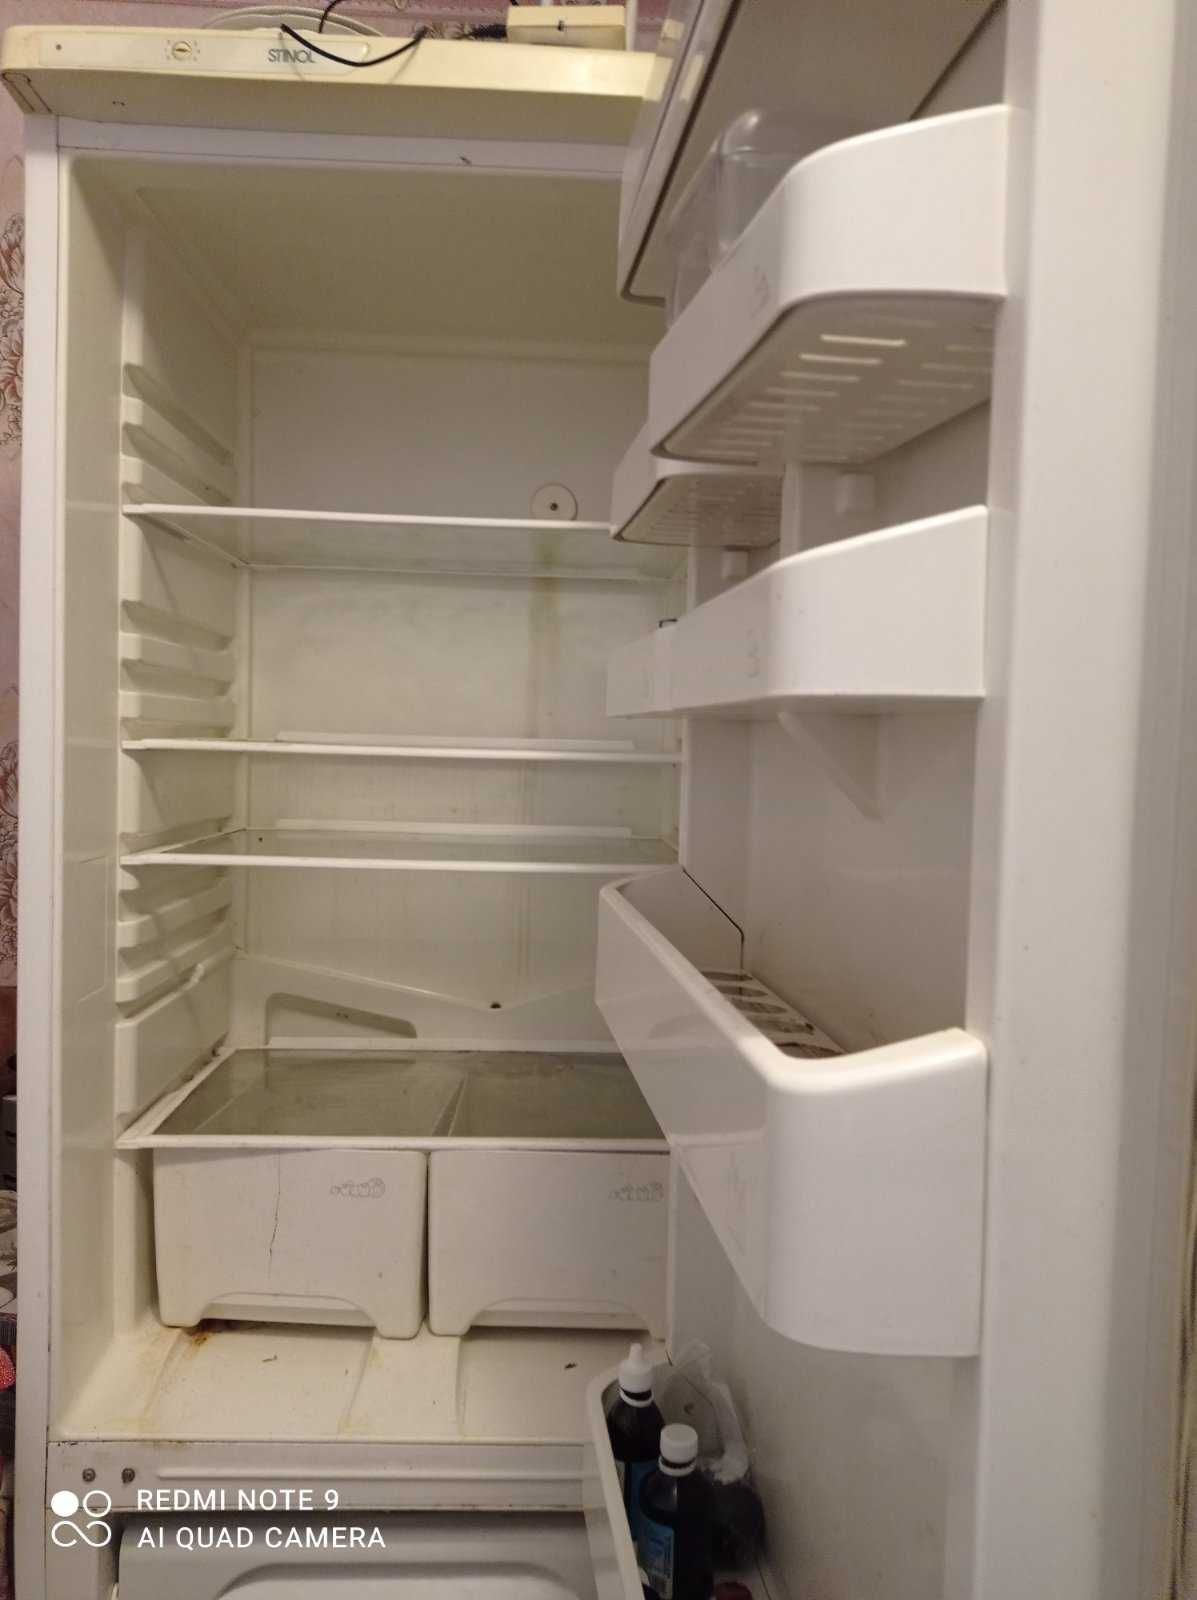 Холодильник неробочий